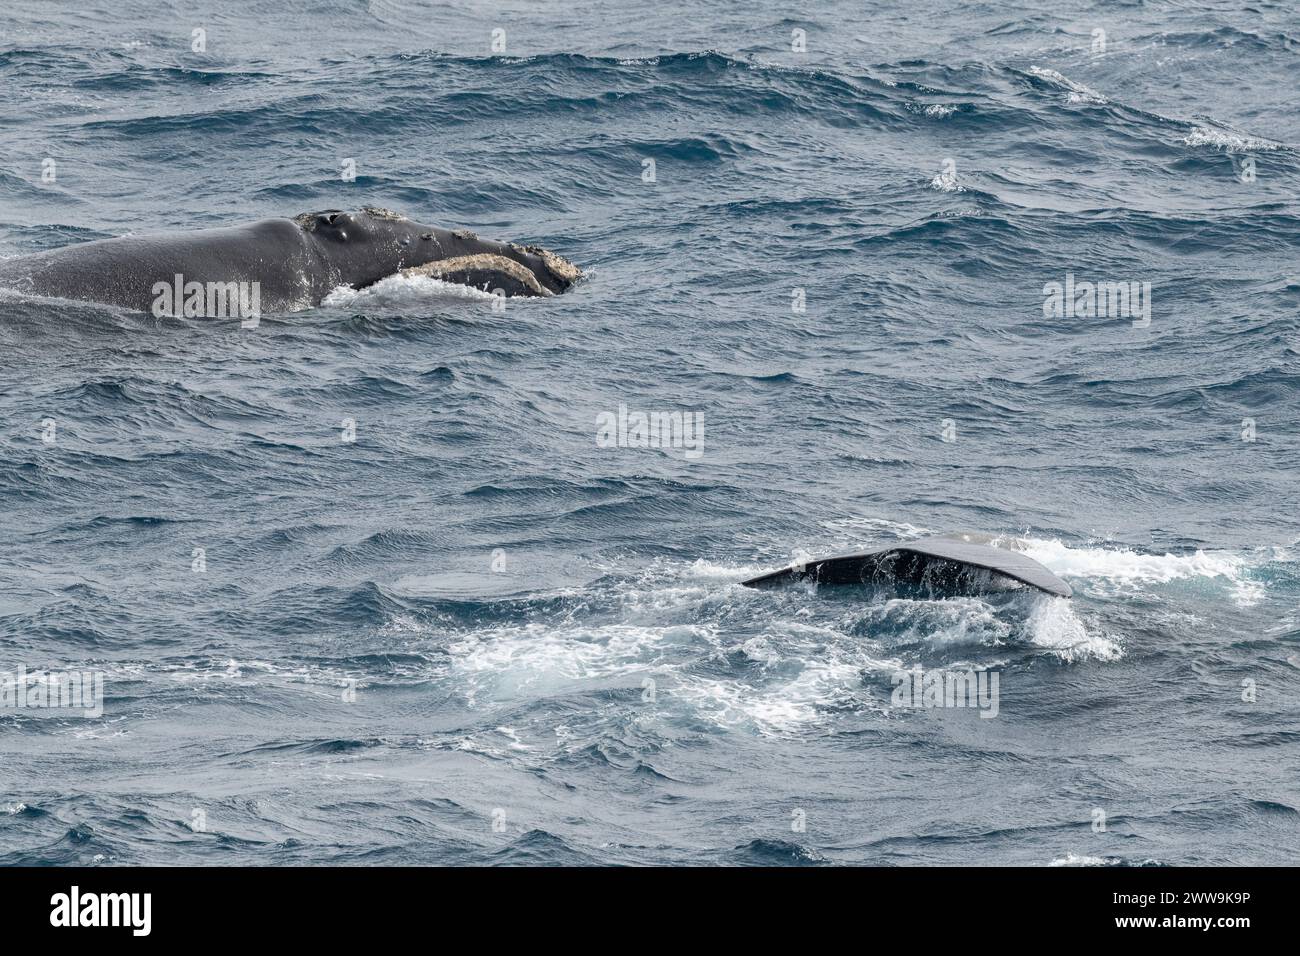 Nuova Zelanda, Isole subantartiche. Al largo della costa di Campbell Island, balene a destra meridionali che mostrano la testa e la coda di due balene. Foto Stock